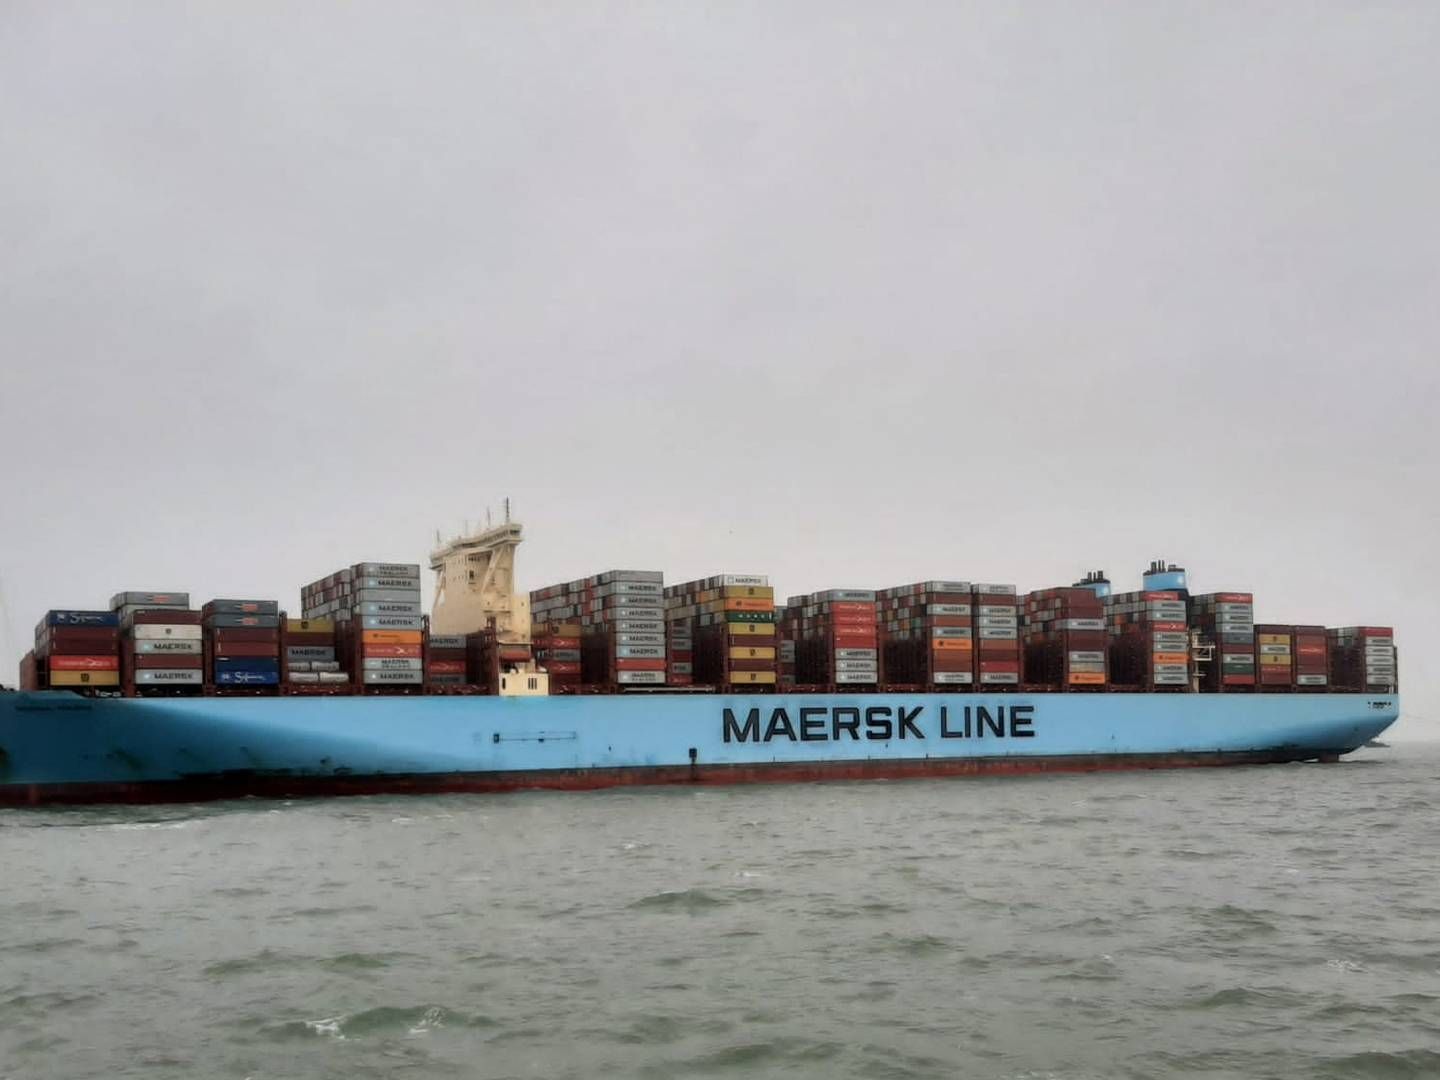 "Eksport også omfatter søtransport. Når et dansk skib fragter varer fra Kina til USA, så tæller fragtindtægterne med i statistikken i dansk favør," fortæller Allan Sørensen, der er cheføkonom i Dansk Industri. | Foto: HAVARIEKOMMANDO/VIA REUTERS / X80001